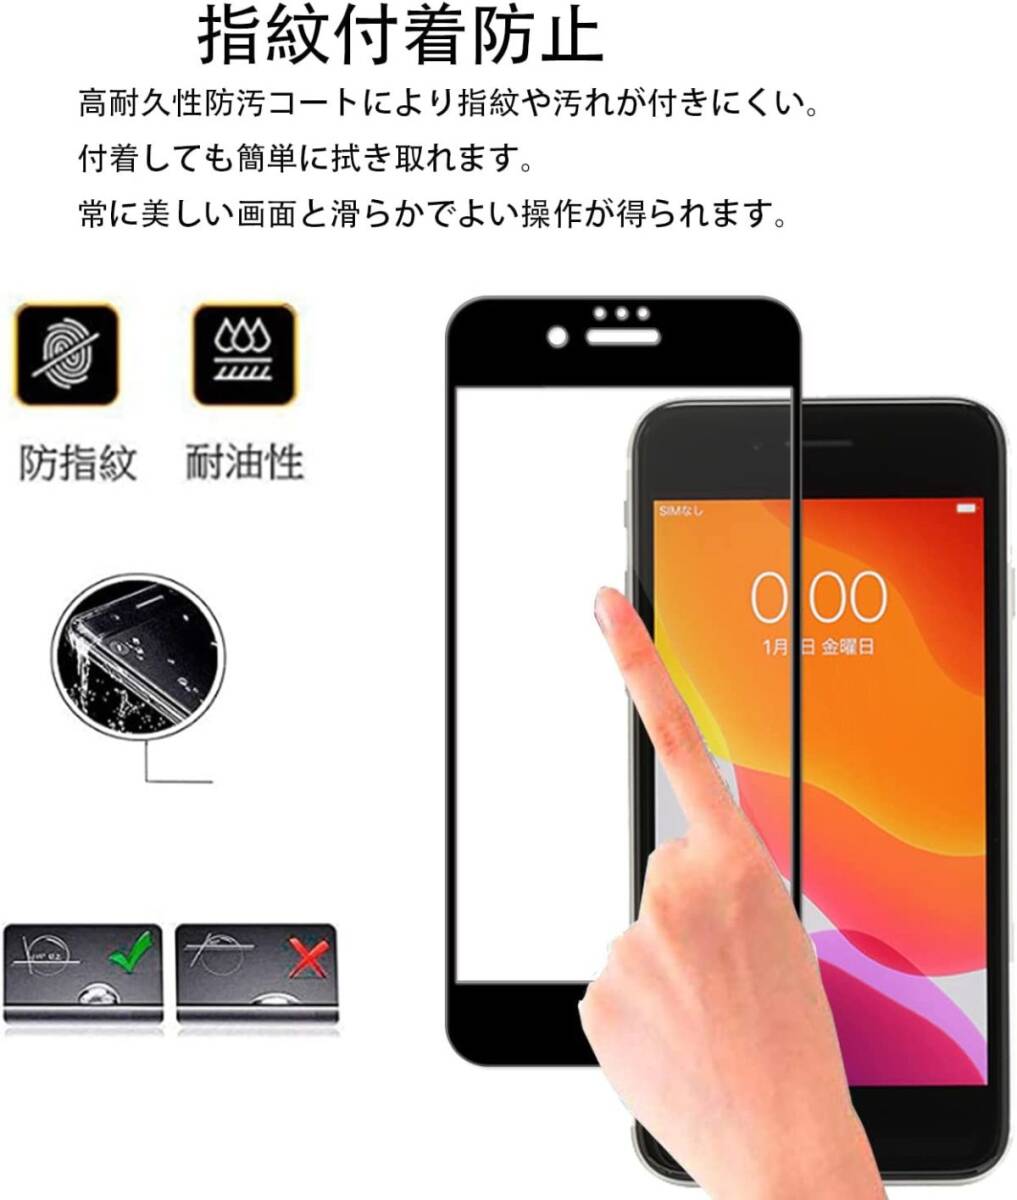 2枚組 iPhone 8 ガラスフィルム ブラック 即購入OK 平面保護 匿名配送 送料無料 アイフォンエイト 破損保障あり paypay